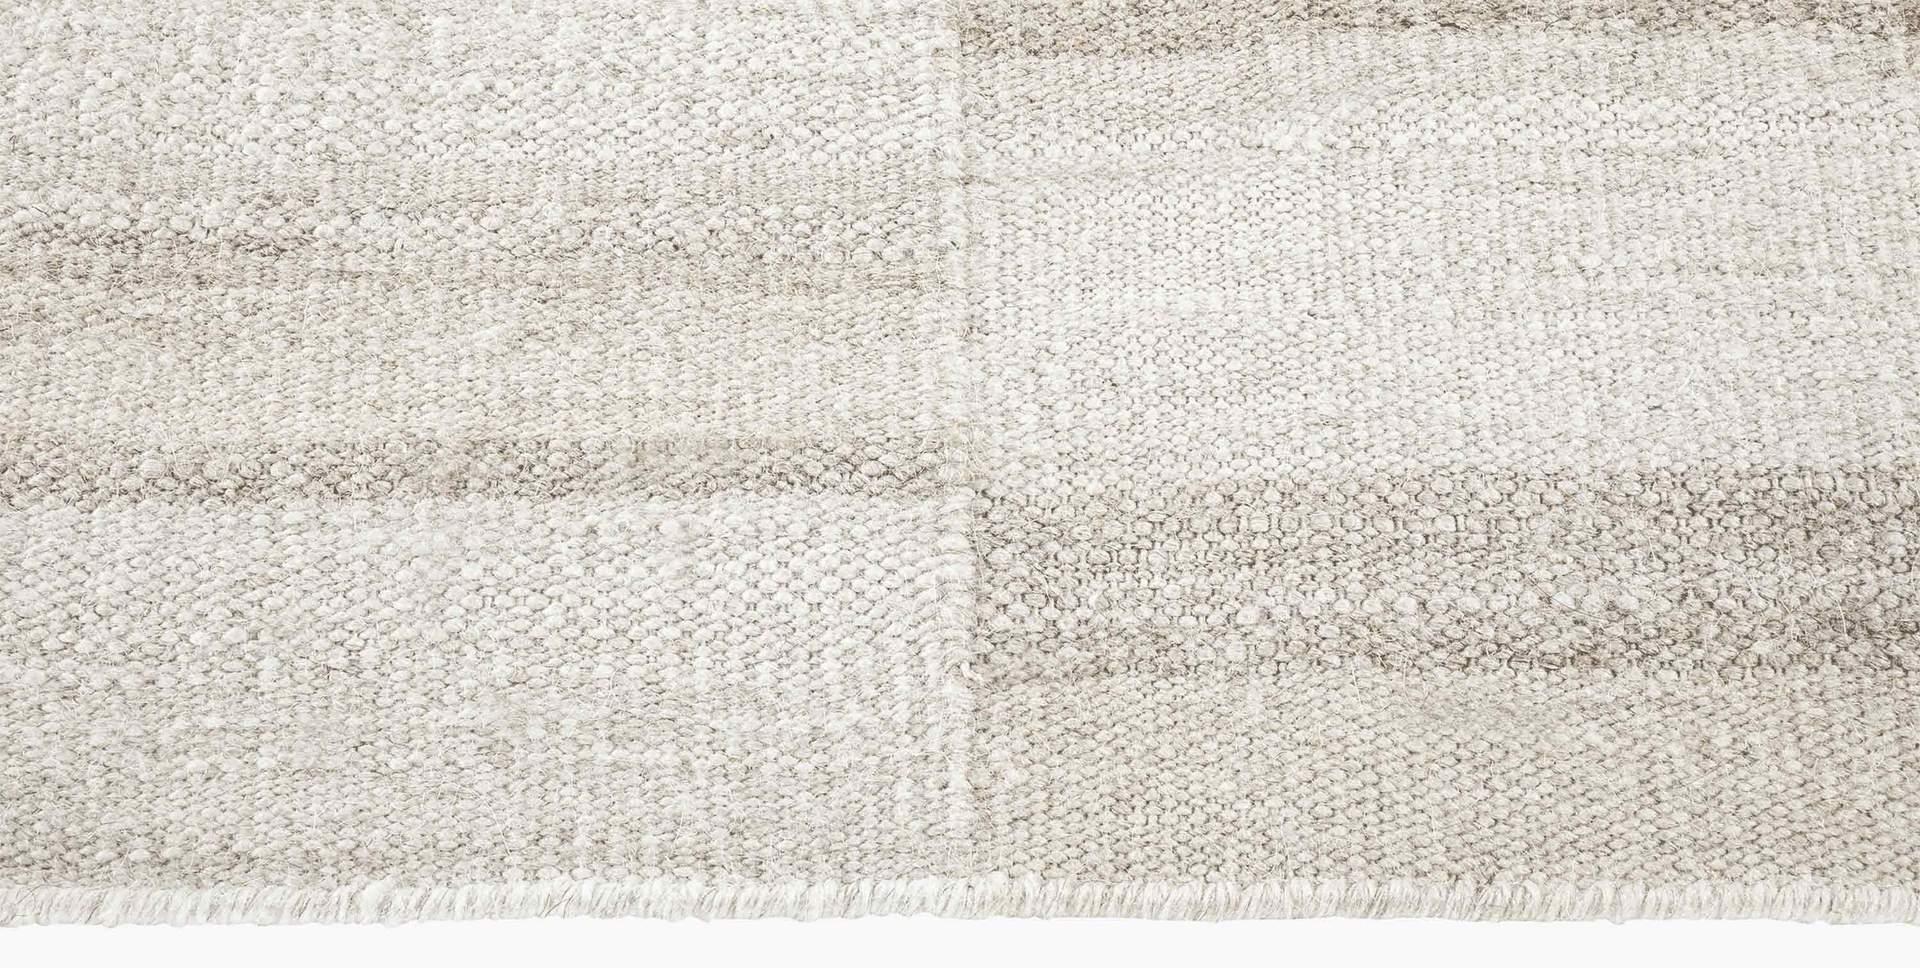 For Sale: Beige (Alterno Sand) Ben Soleimani Alterno Rug– Hand-woven Textured Soft Wool Sand 12'x15' 3